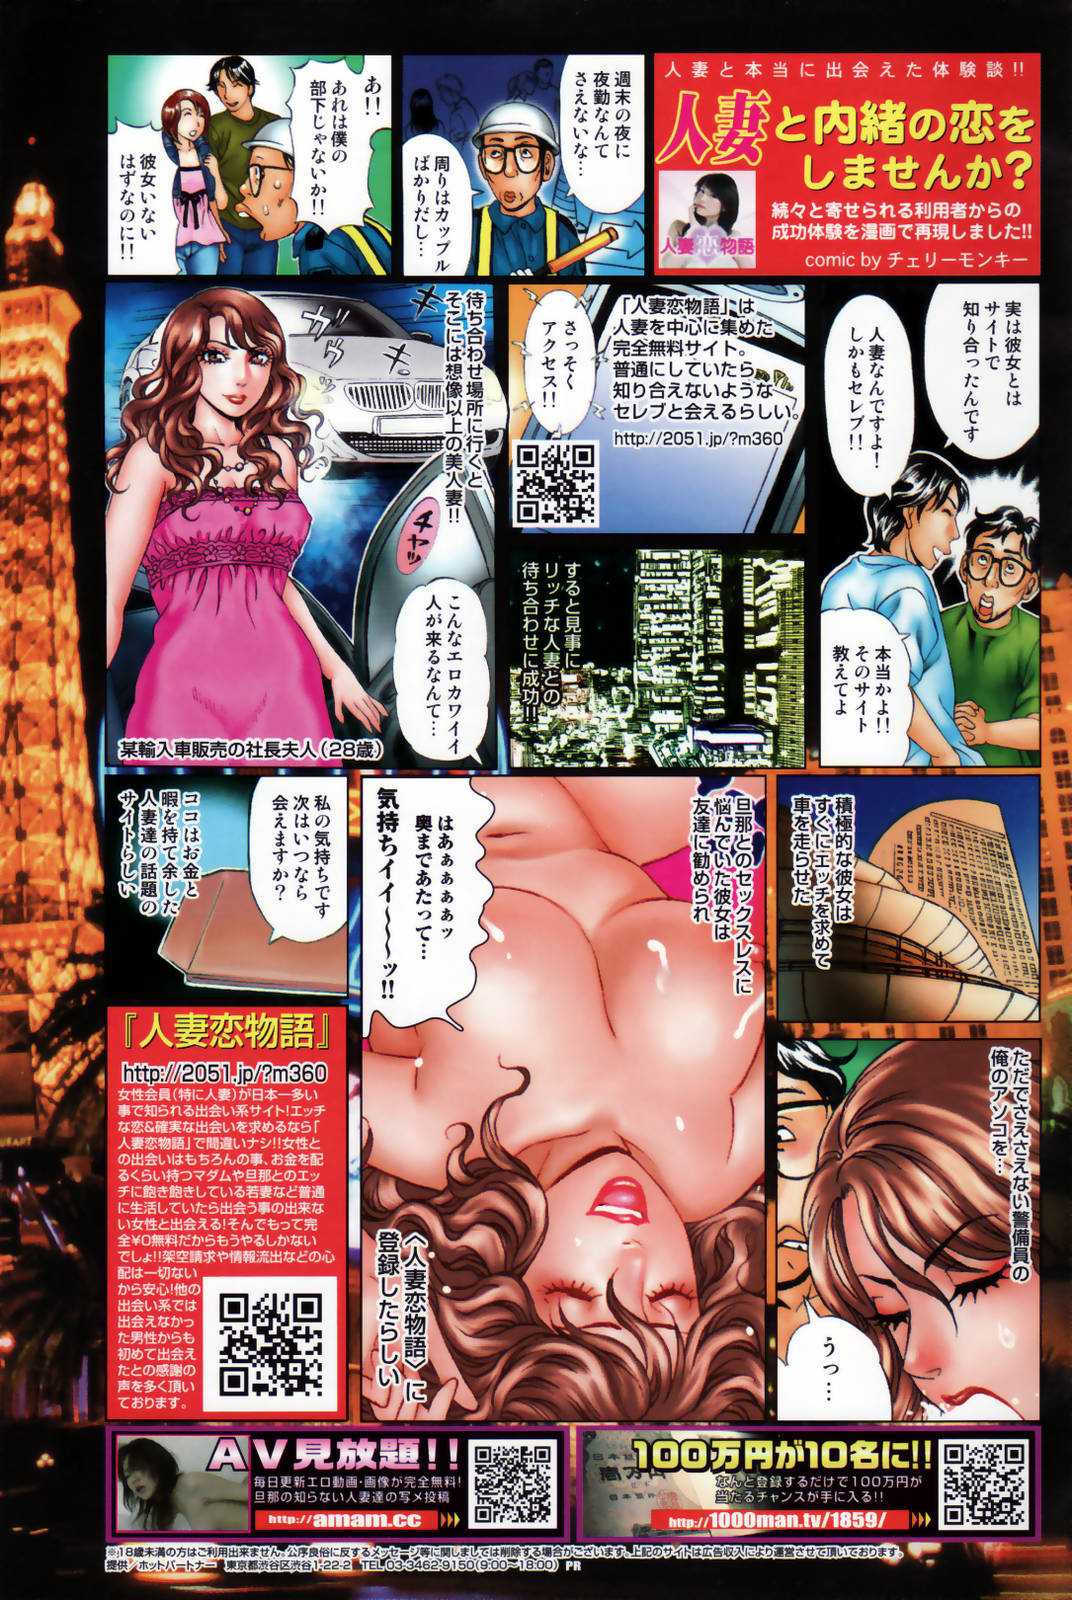 Manga Bangaichi [2007-08] 漫画ばんがいち 2007年8月号